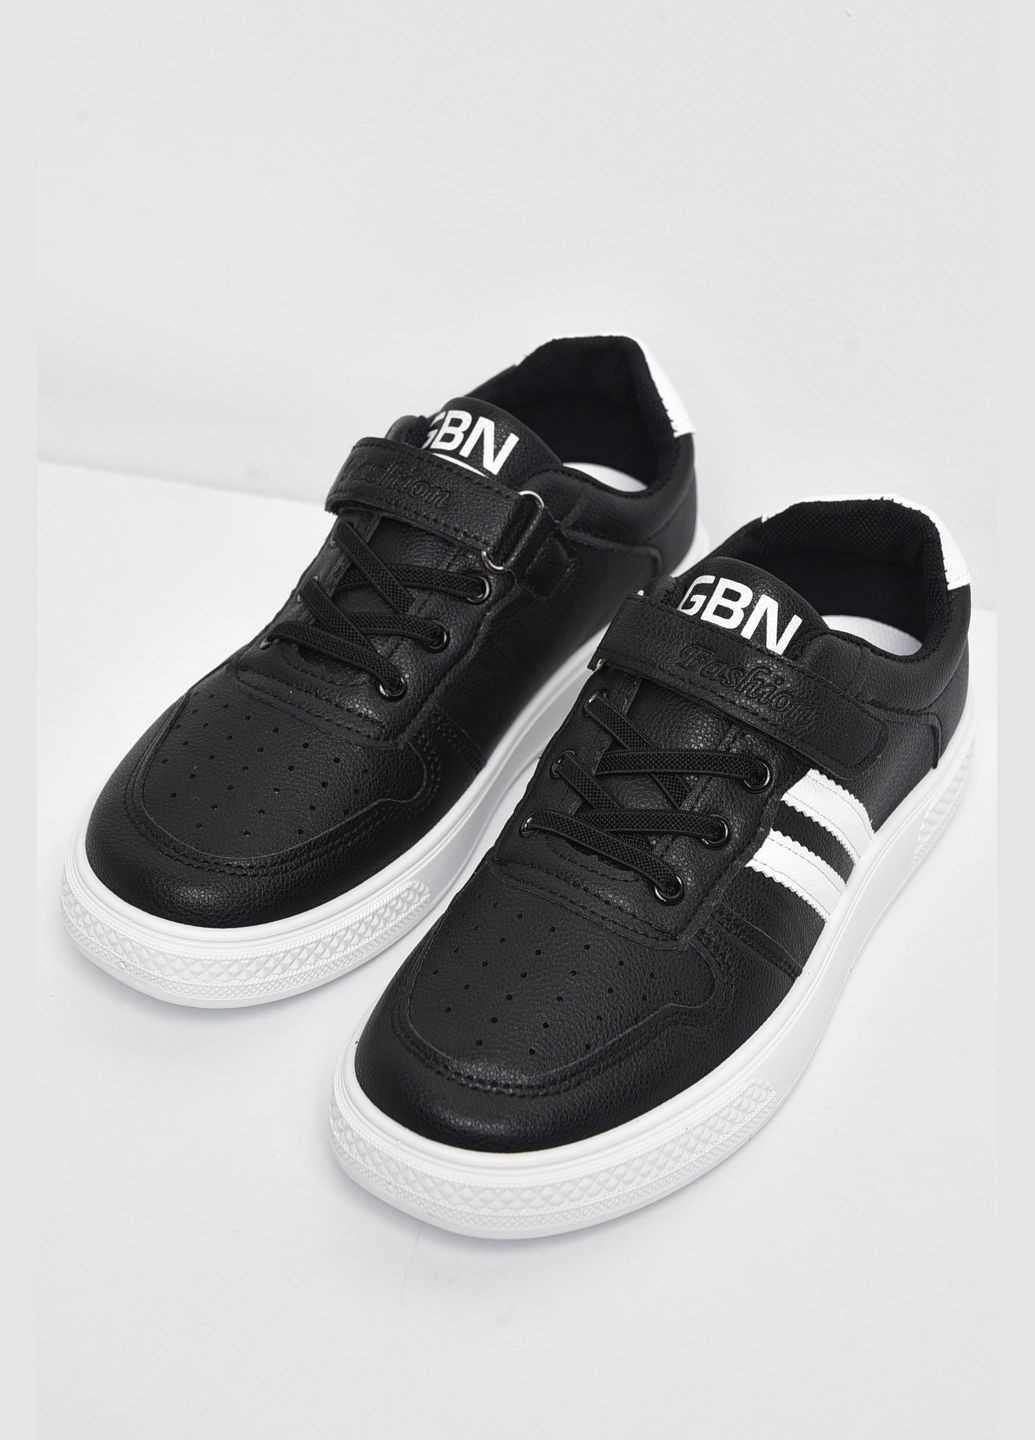 Чорні осінні кросівки дитячі чорного кольору на ліпучці та шнурівці Let's Shop